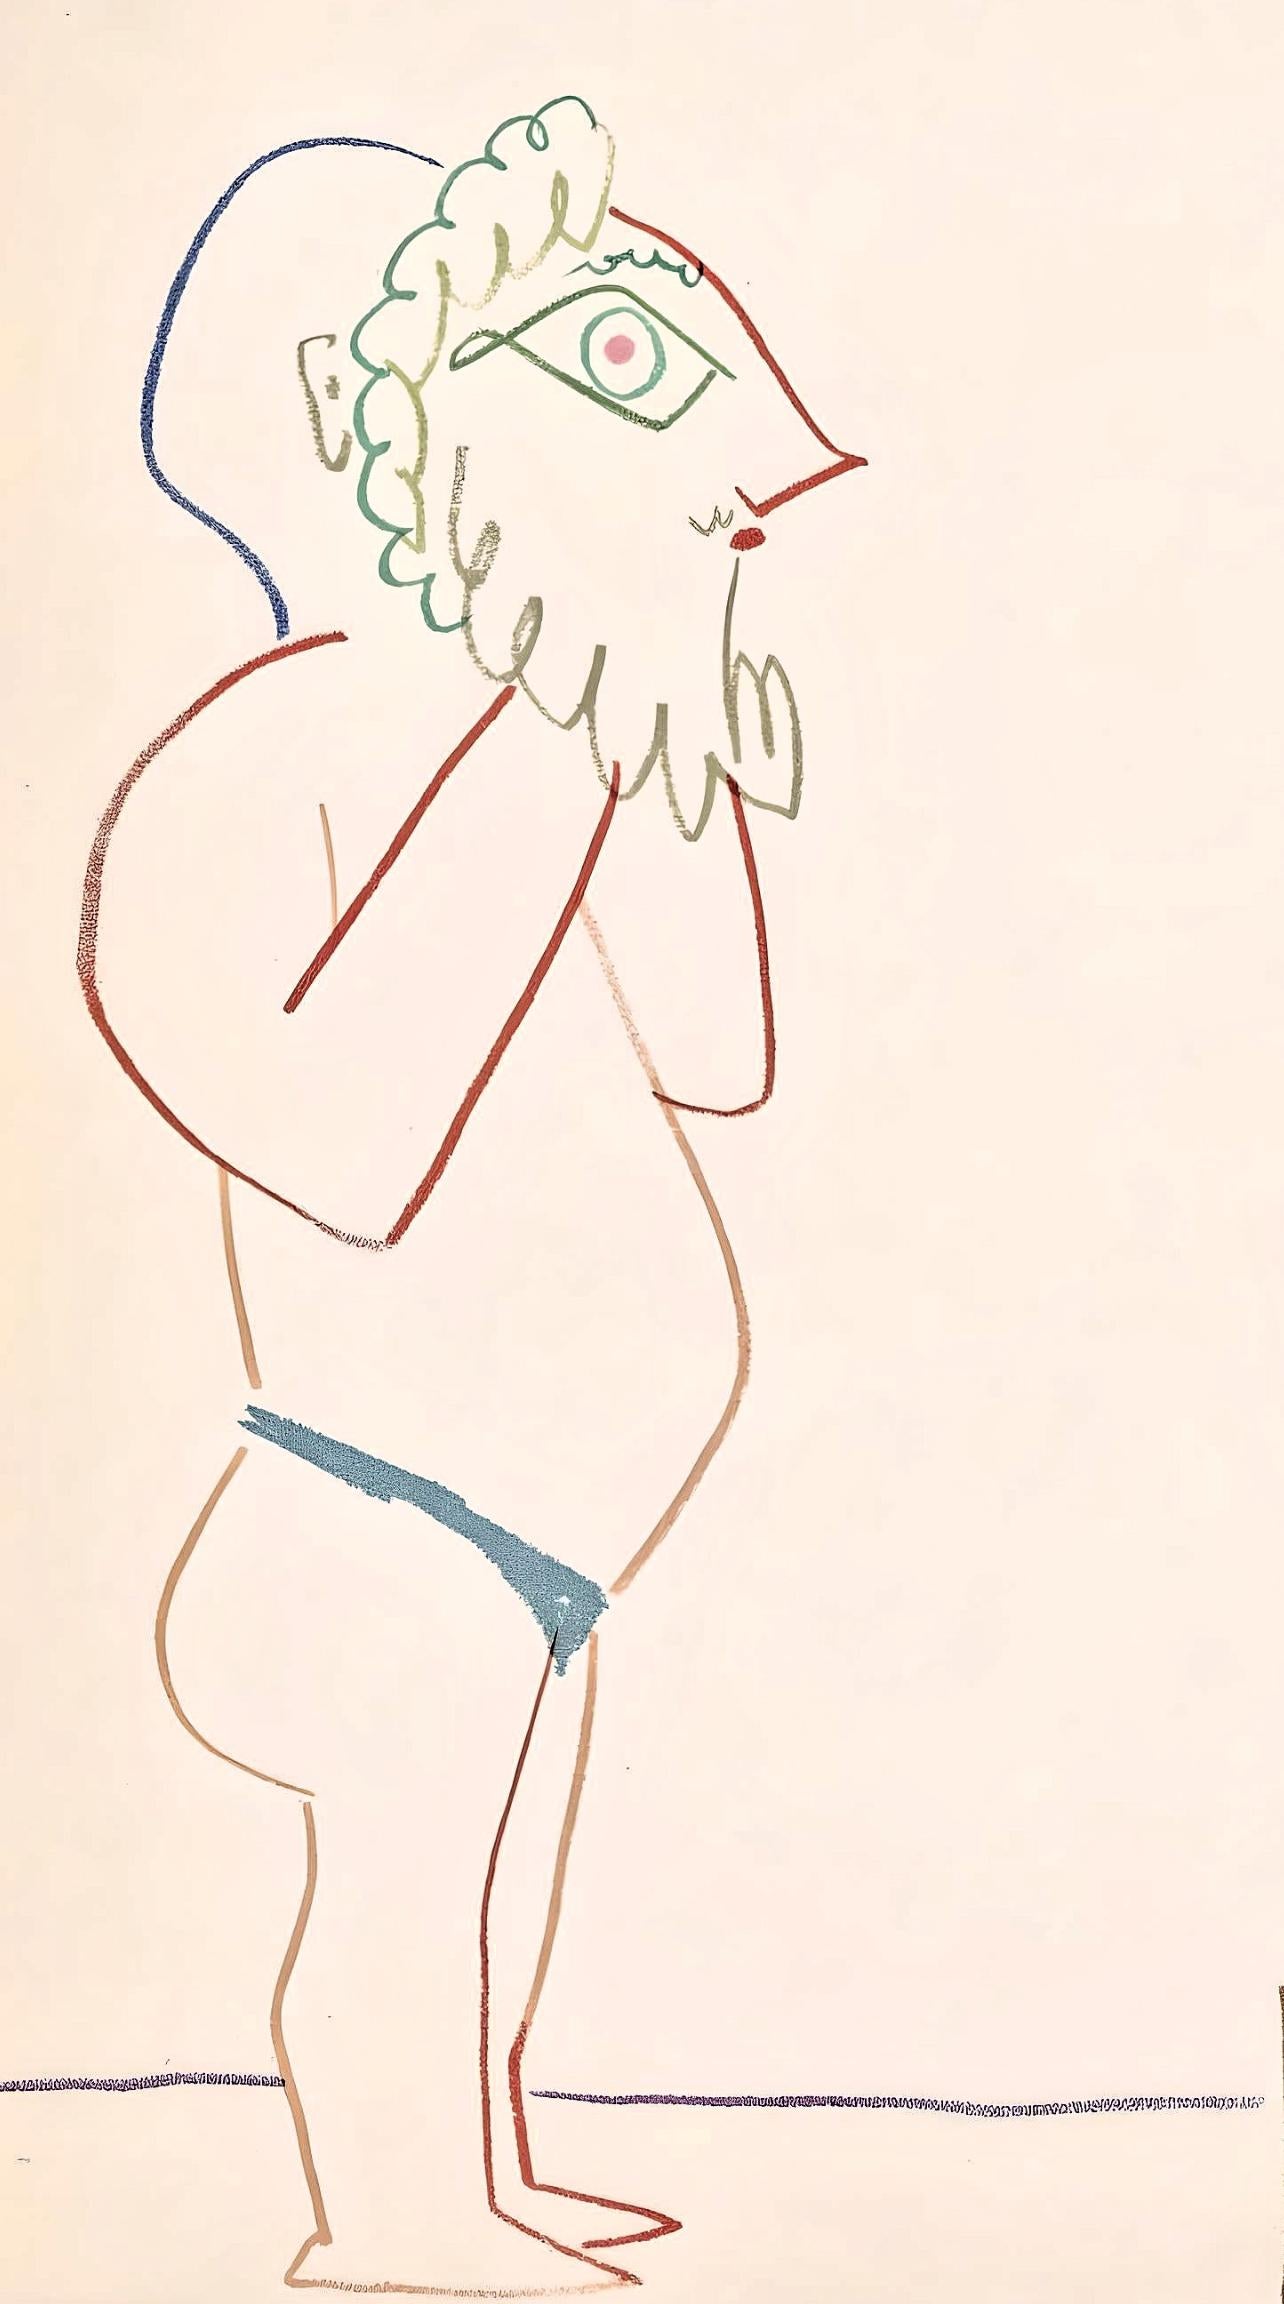 Picasso, Composition, La Comédie Humaine (after) - Cubist Print by Pablo Picasso